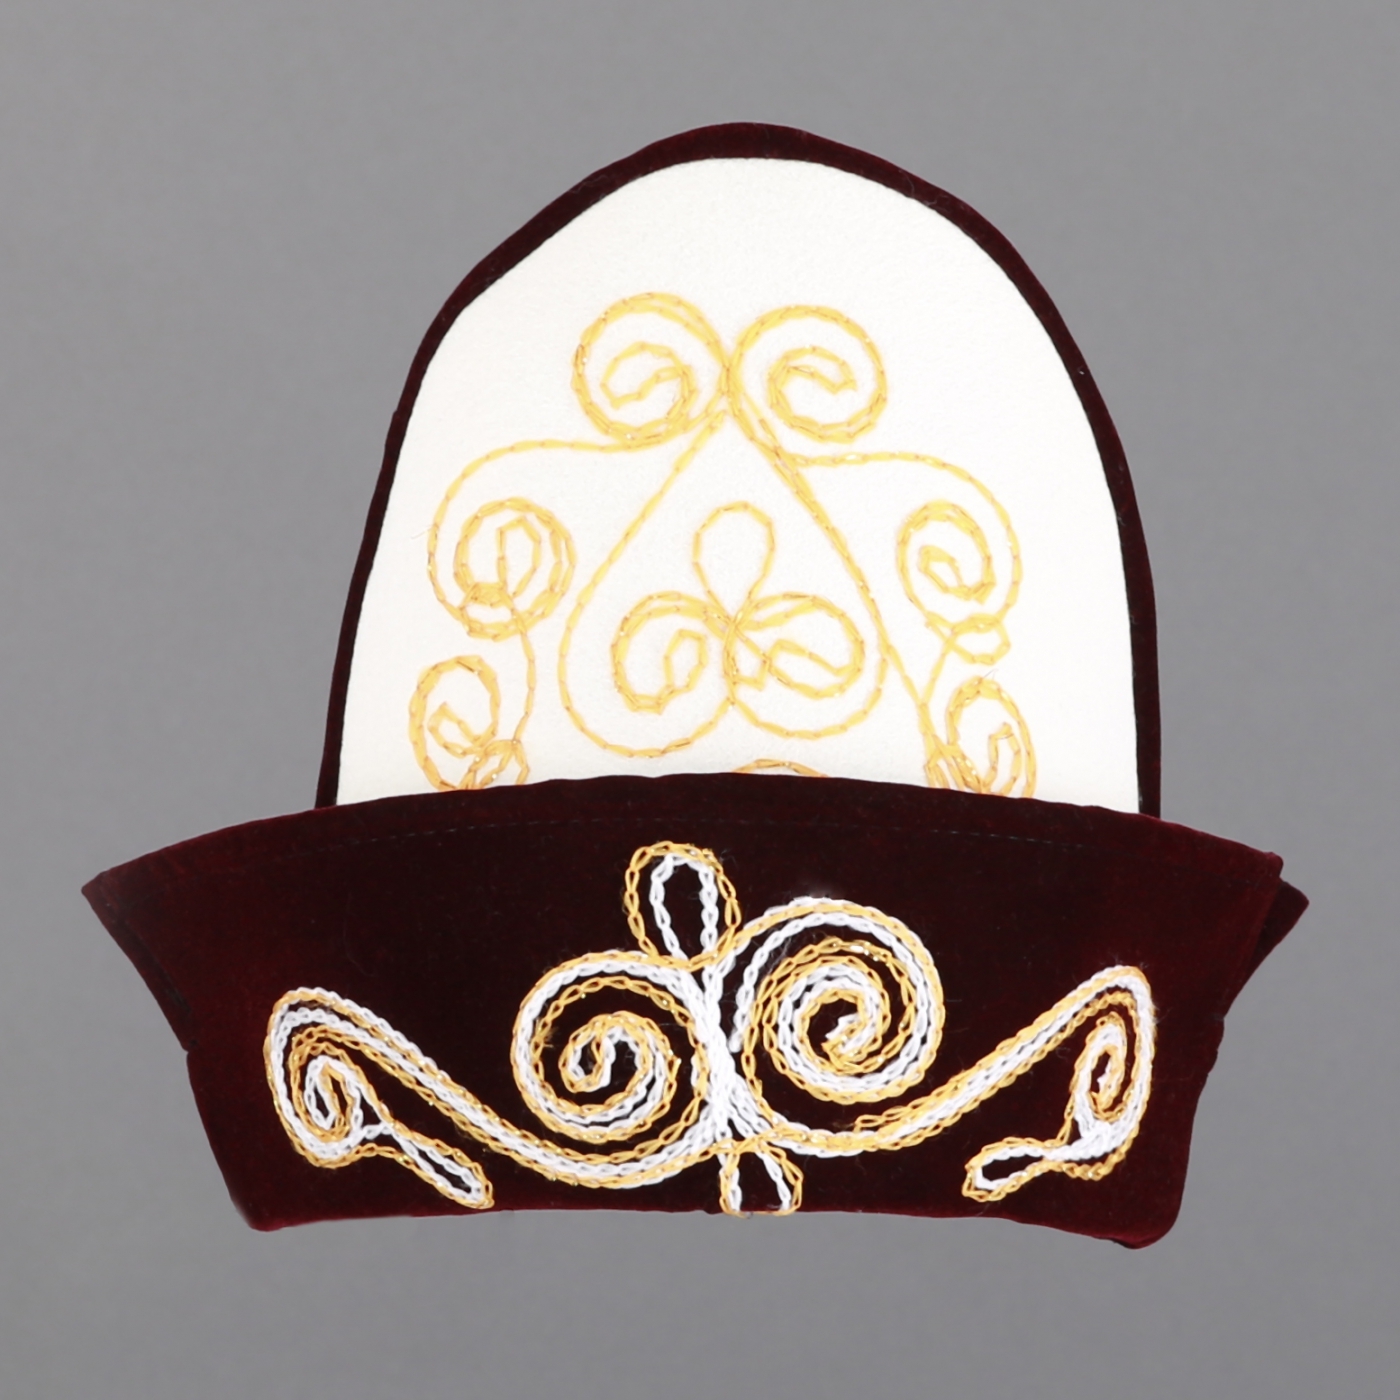 Такия тюбетейка. Головной убор Bergy (687, 56) головной убор Bergy (687, 56). Казахская шапка Борык. Национальная шапка Бакай калпак. Казахская Национальная тюбетейка.